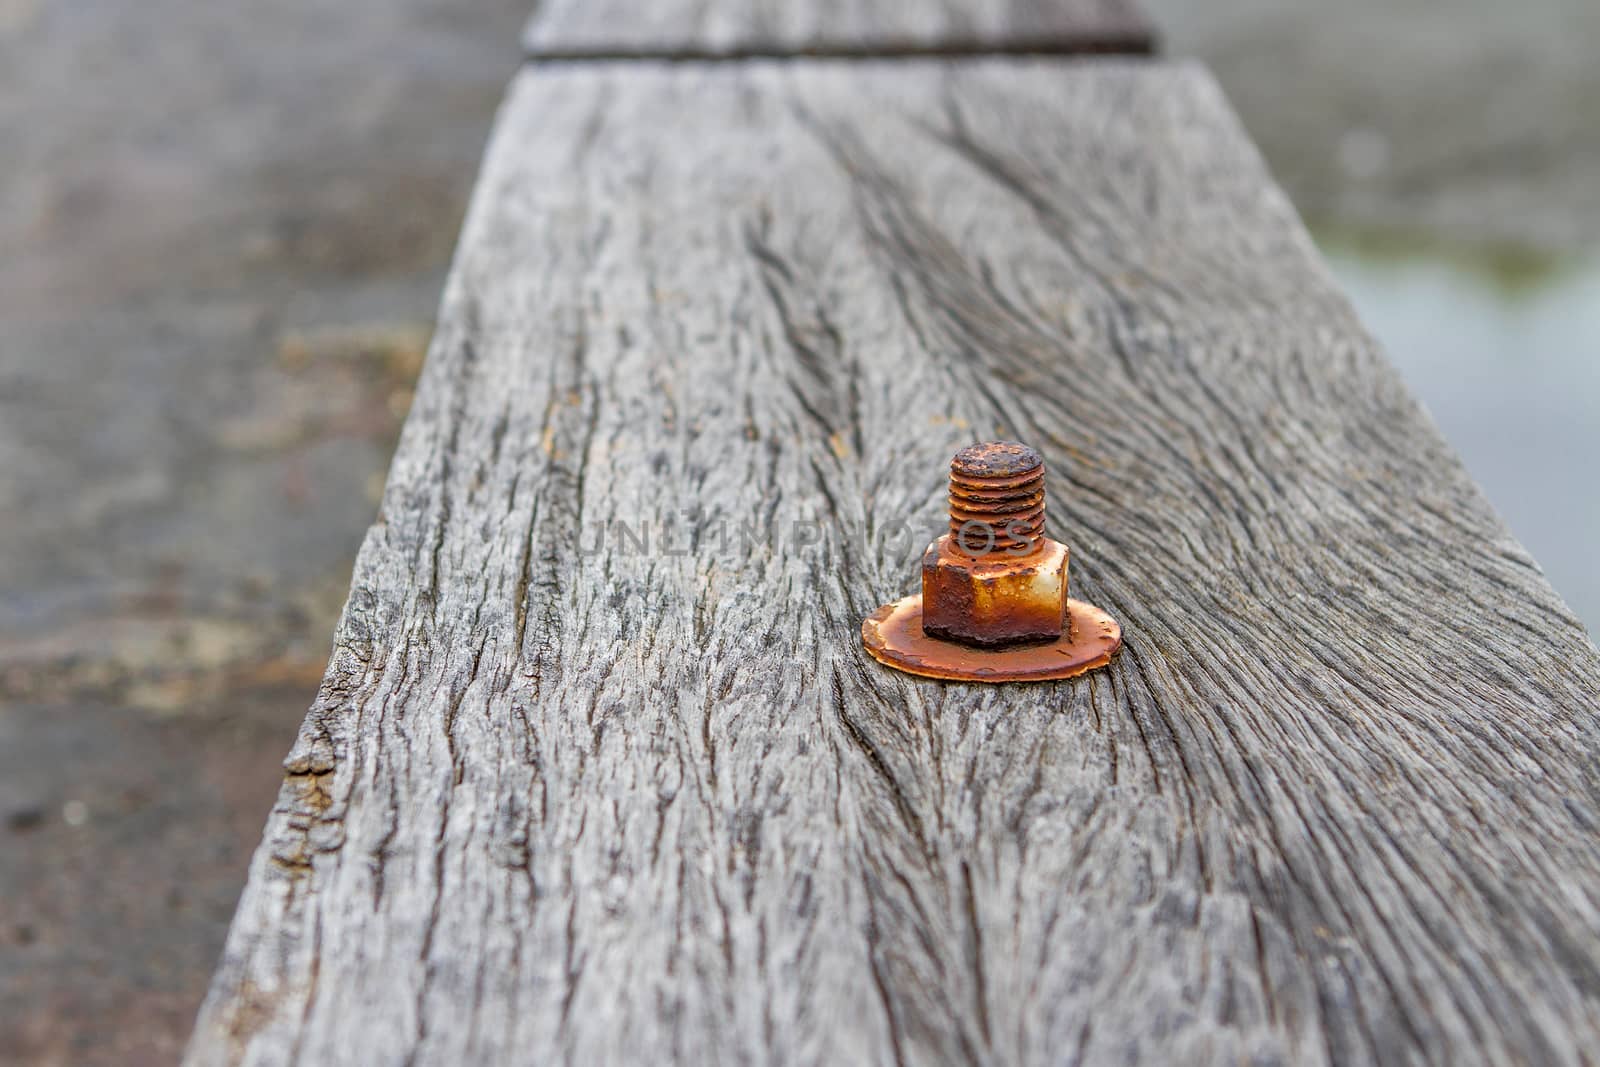 The nut is rust on old wood floor. by TakerWalker